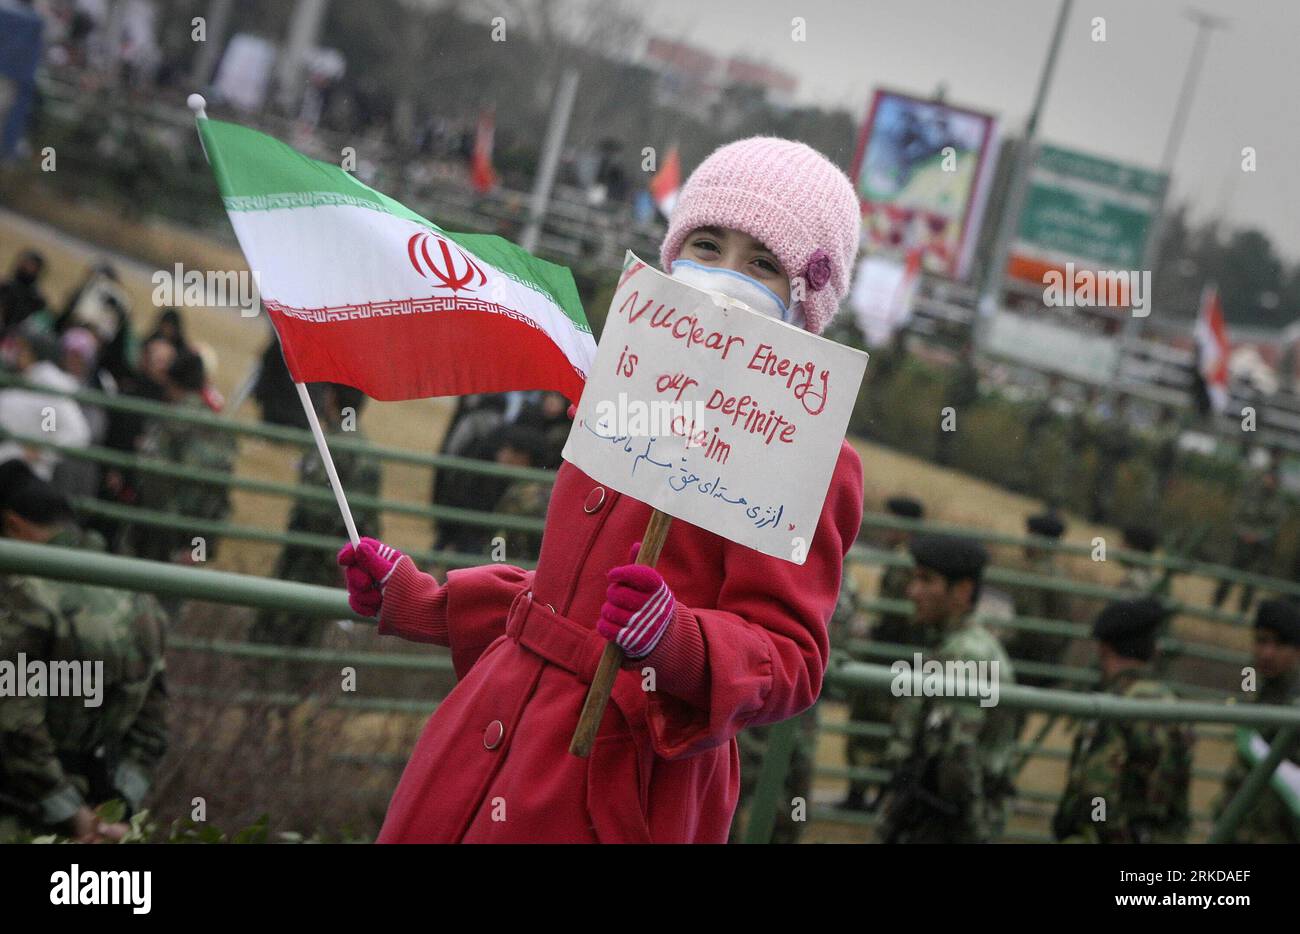 Bildnummer : 54897180 Datum : 11.02.2011 Copyright : imago/Xinhua TÉHÉRAN, 11 février 2011 (Xinhua) --une jeune fille iranienne tient une pancarte lors d'un rassemblement célébrant le 32e anniversaire de la révolution islamique sur la place Azadi (liberté) à Téhéran, capitale de l'Iran, le 11 février 2011. (Xinhua/Ahmad Halabisaz) IRAN-RÉVOLUTION ISLAMIQUE-ANNIVERSAIRE-RALLYE PUBLICATIONxNOTxINxCHN Politik Iran Jubiläum kbdig xsp 2011 quer kurios o0 Fahne Nationalflagge Kind Bildnummer 54897180 Date 11 02 2011 Copyright Imago XINHUA TÉHÉRAN février 11 2011 XINHUA à Iranian Girl tient une pancarte lors d'un rassemblement célébrant la 32 Banque D'Images